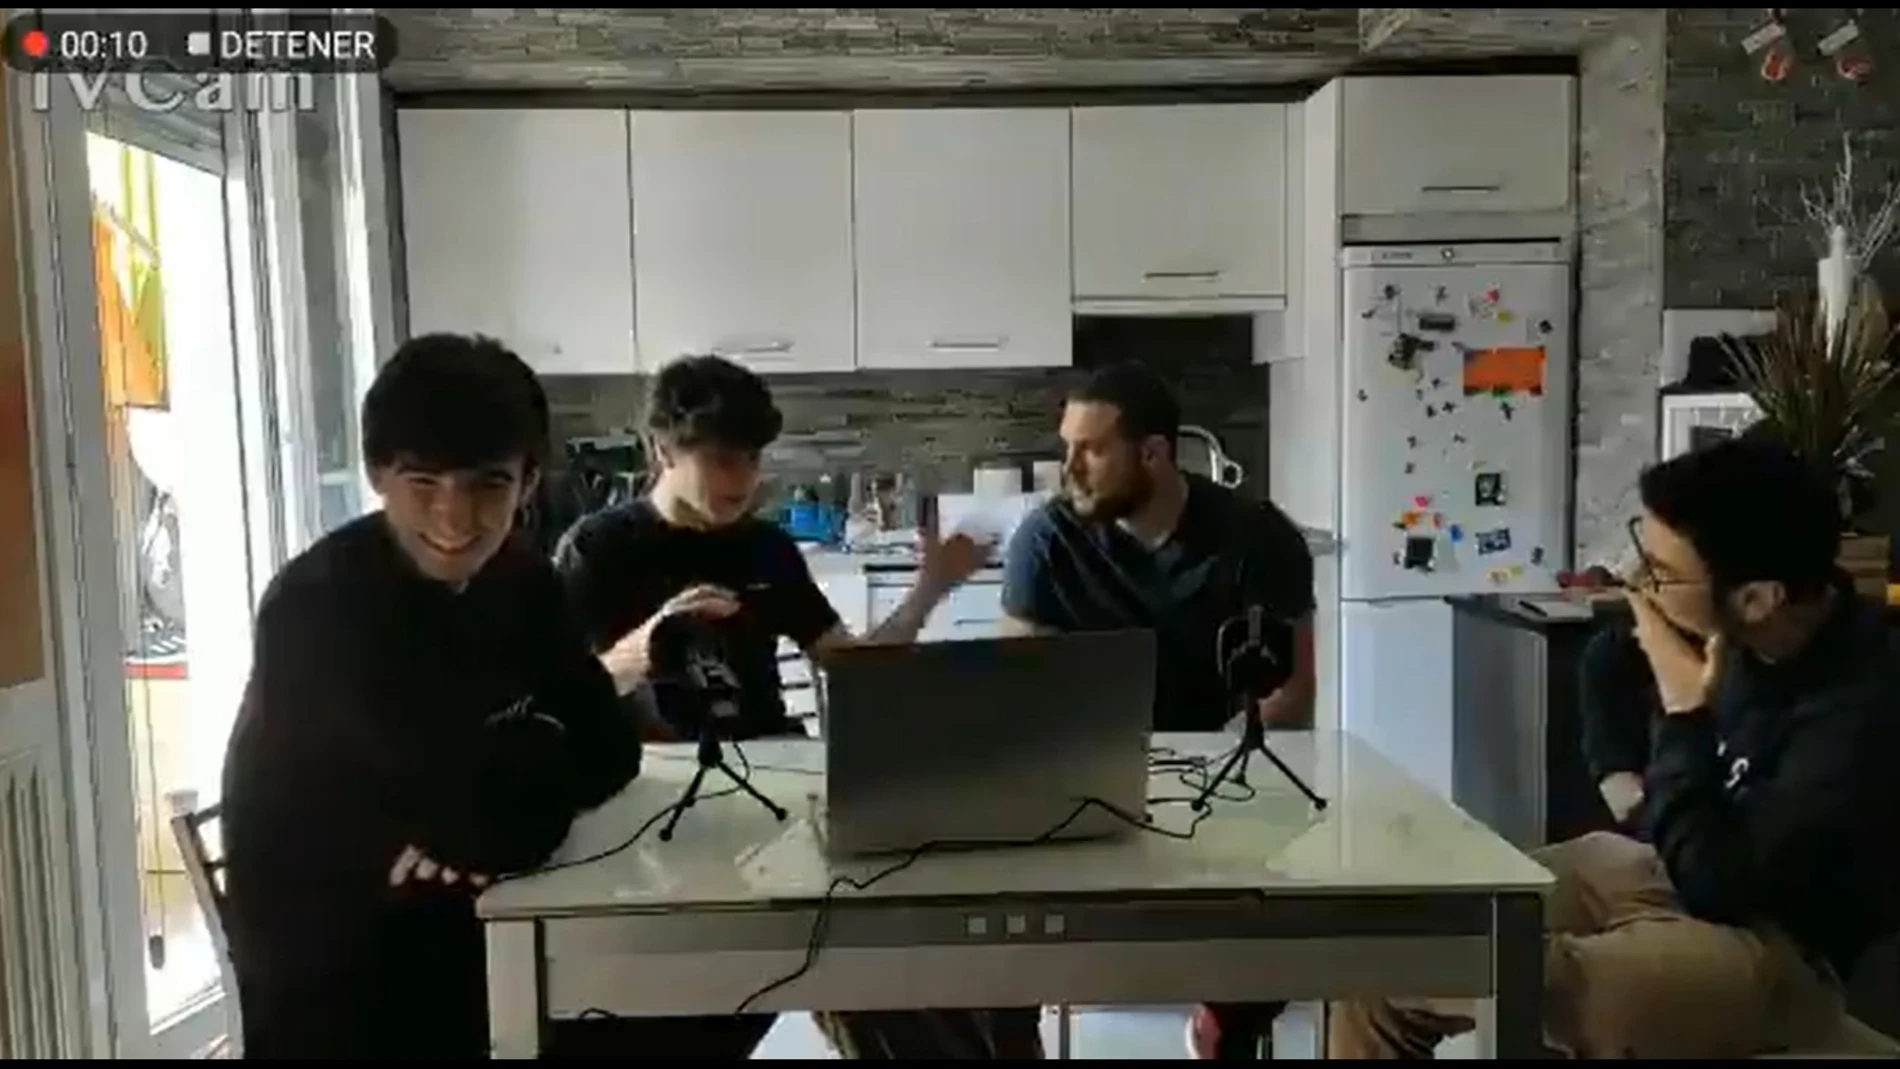 Captura del vídeo en el que cuatro jóvenes hablan sobre agredir a homosexuales